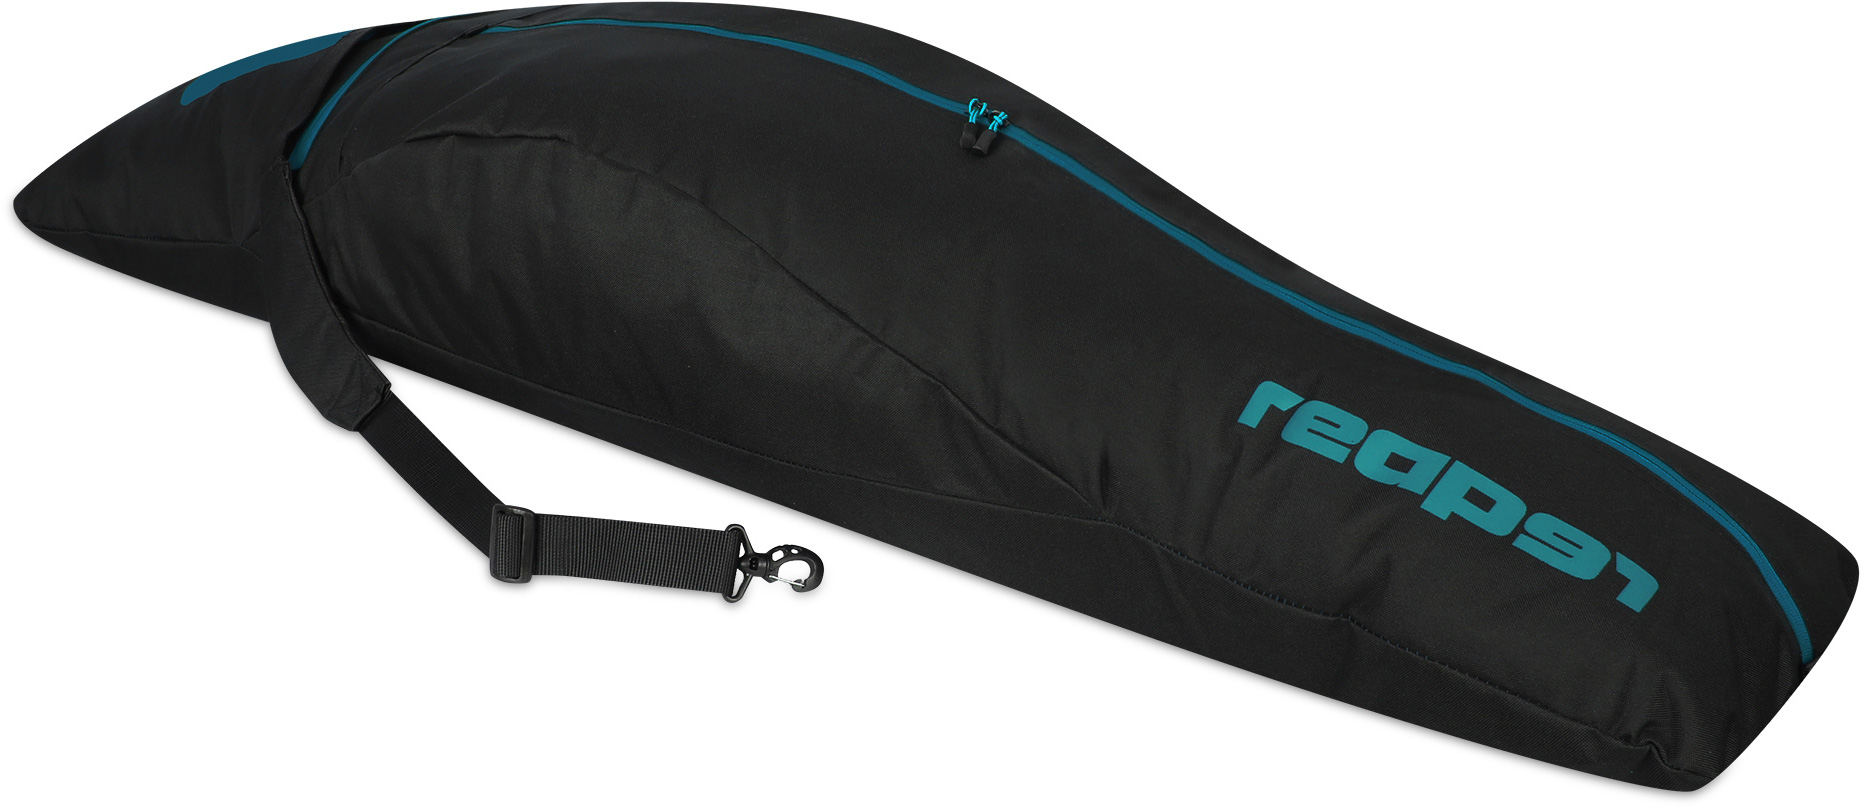 S-BAG U5A 156 - Snowboard bag